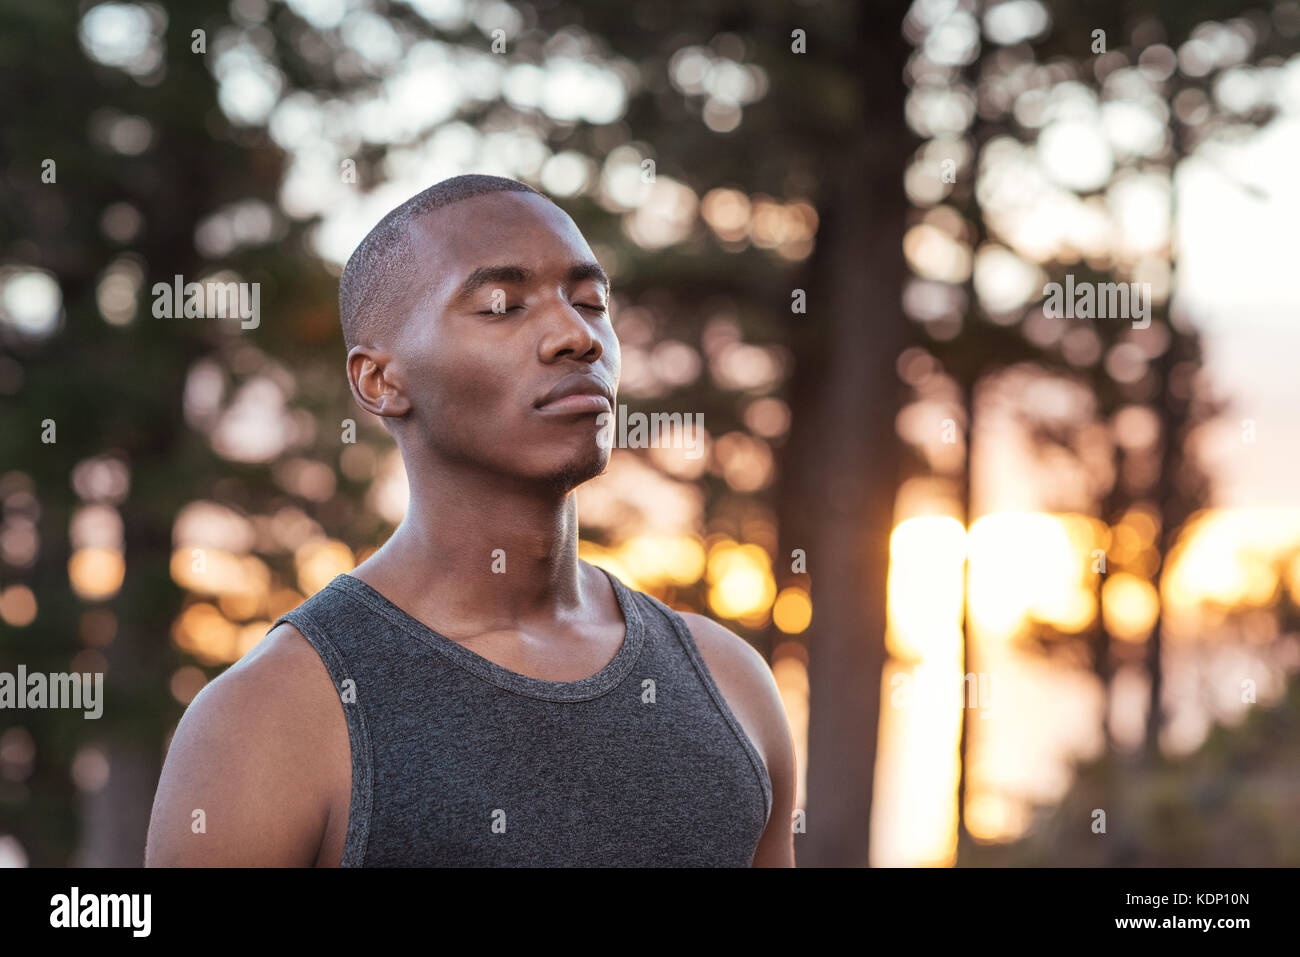 El hombre africano joven obteniendo enfocado para un cross country ejecutar Foto de stock